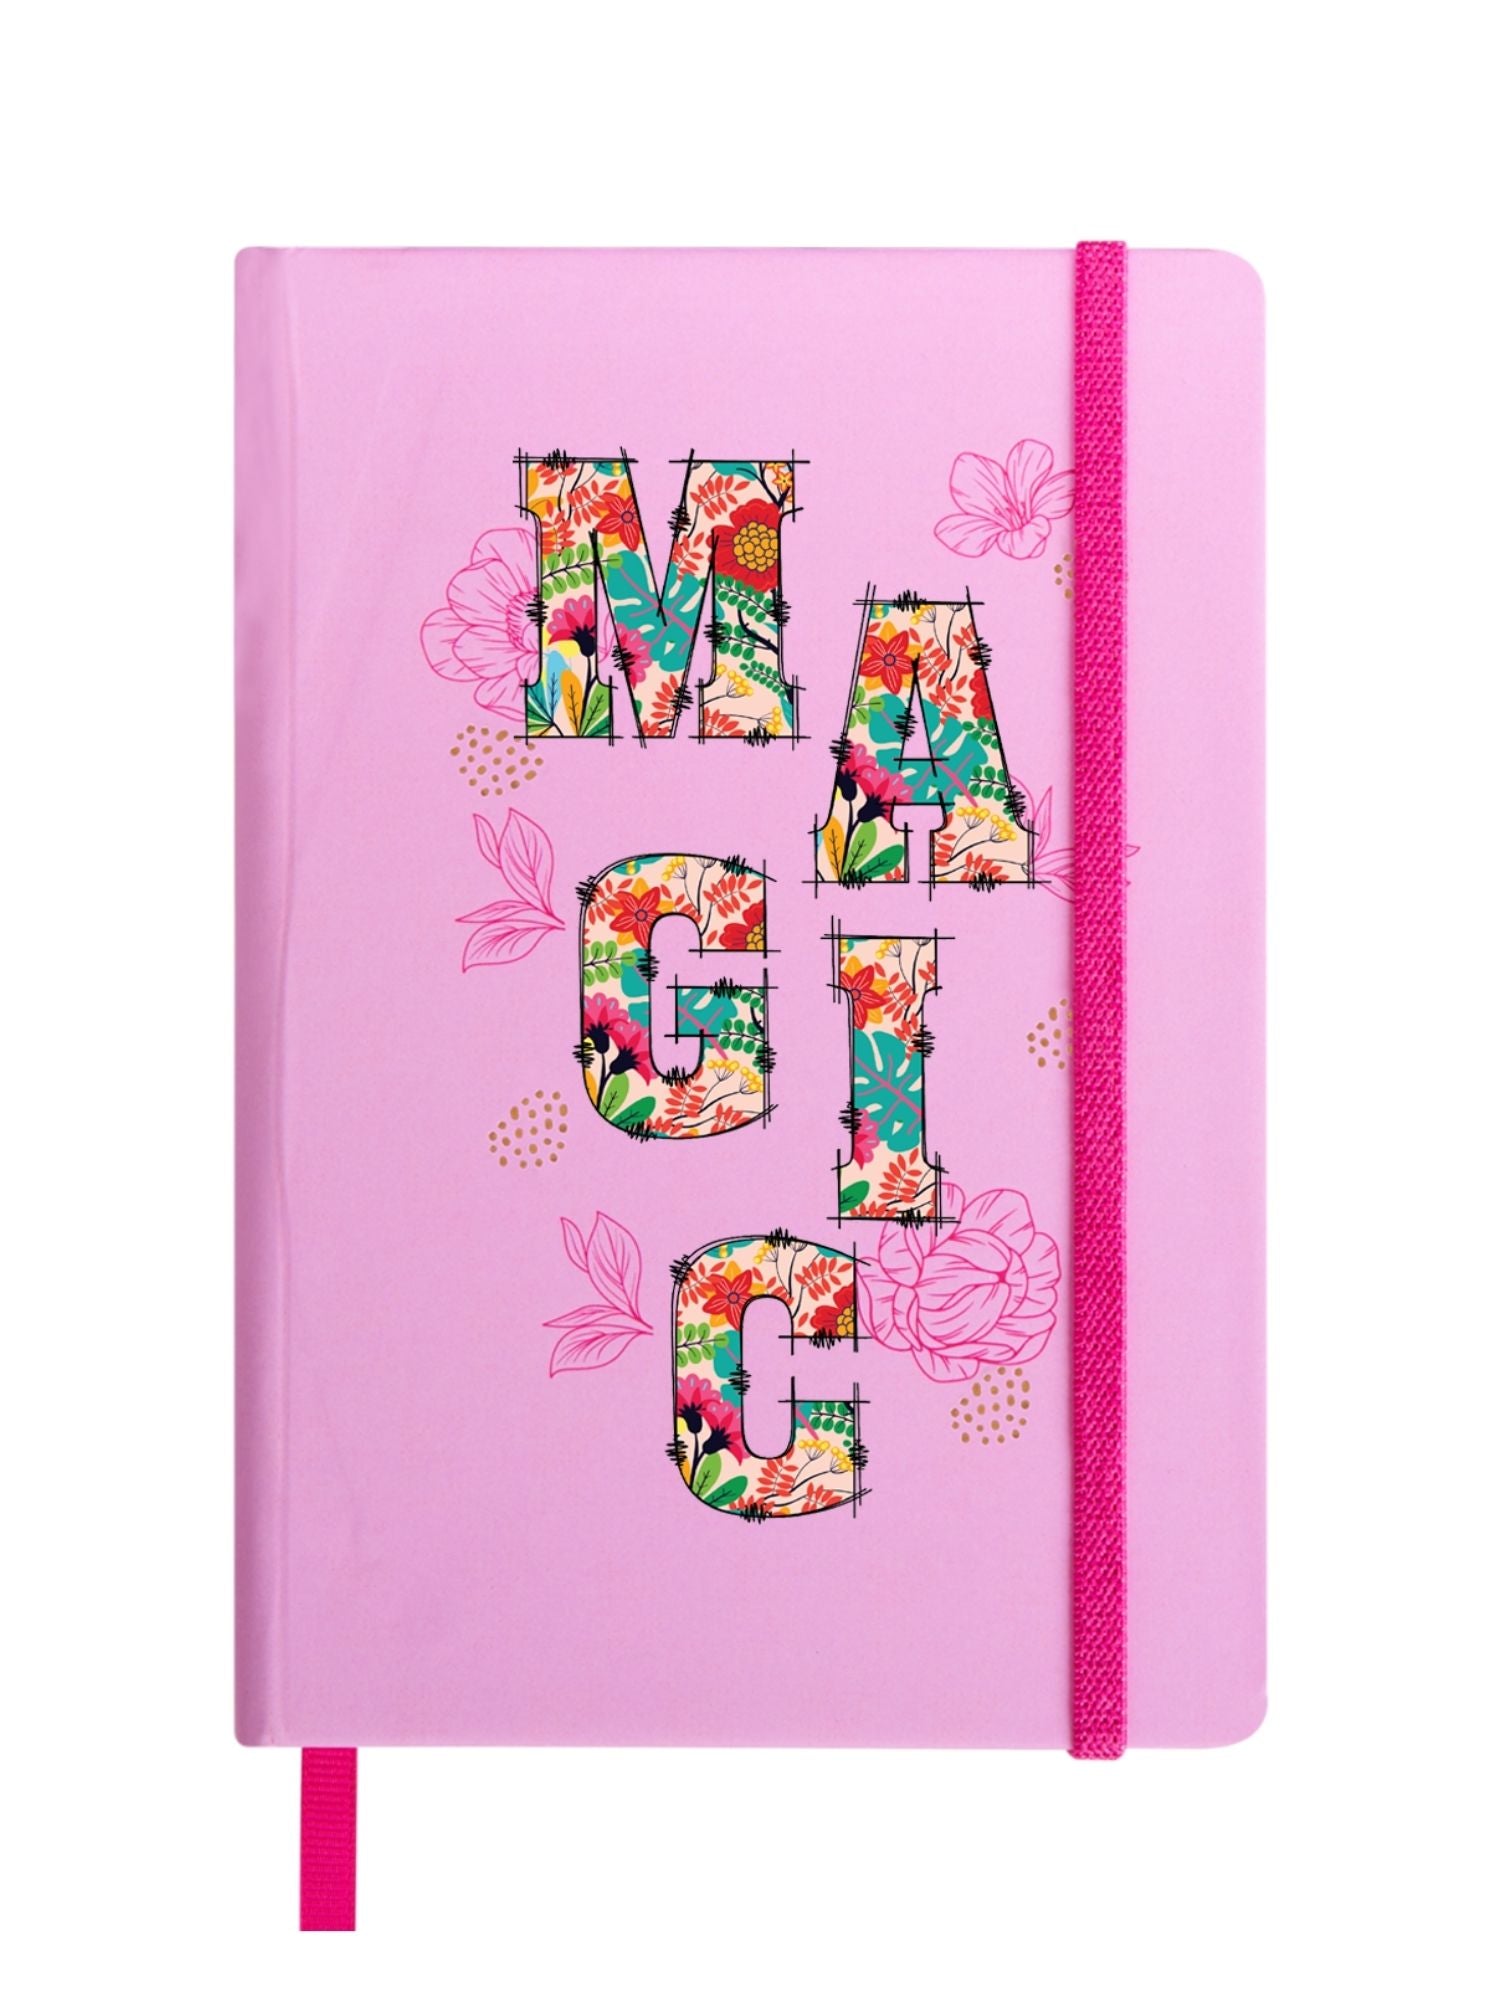 DOODLE Camellia Hardbound B6 Diary Notebook - MAGIC